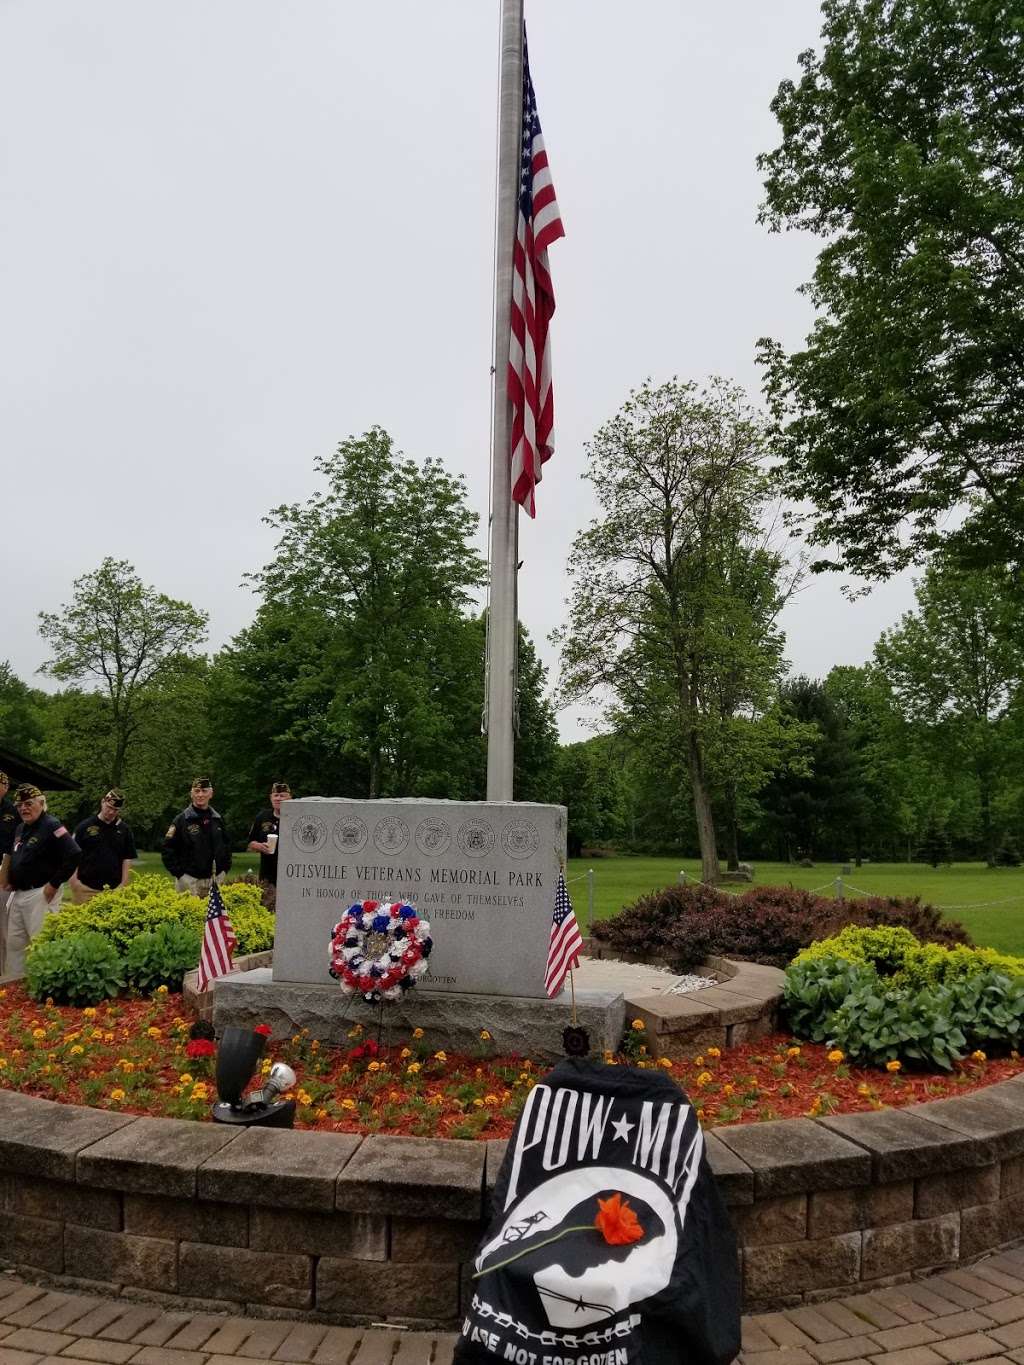 Otisville Veterans Memorial Park | 23-79 Main St, Otisville, NY 10963, USA